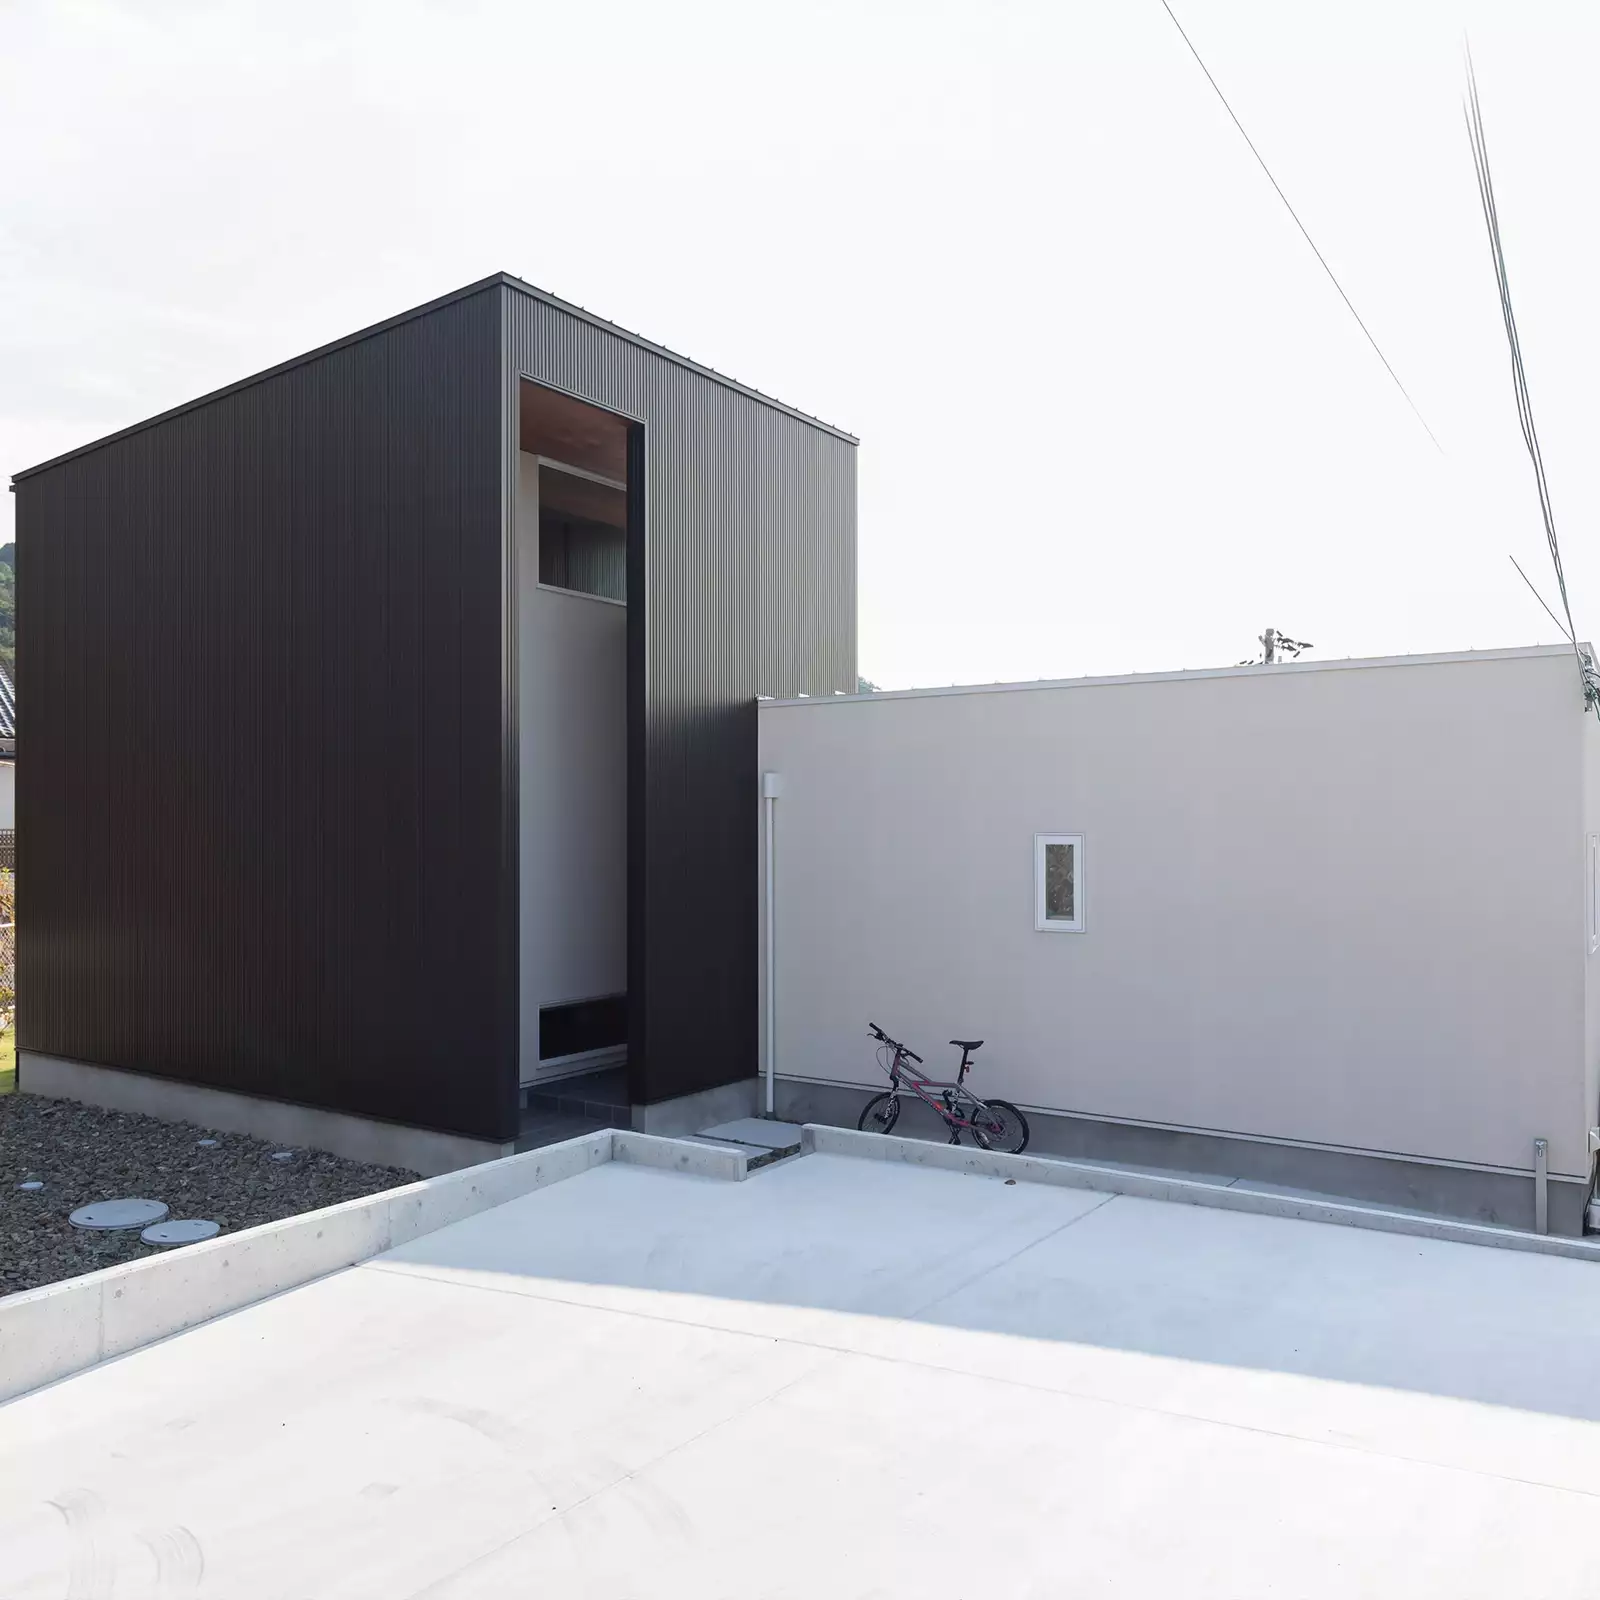 R+houseの物件の外観の写真です。左側は黒いほぼ正方形の建物、右側は少し低い長方形の白い建物がくっついた物件。